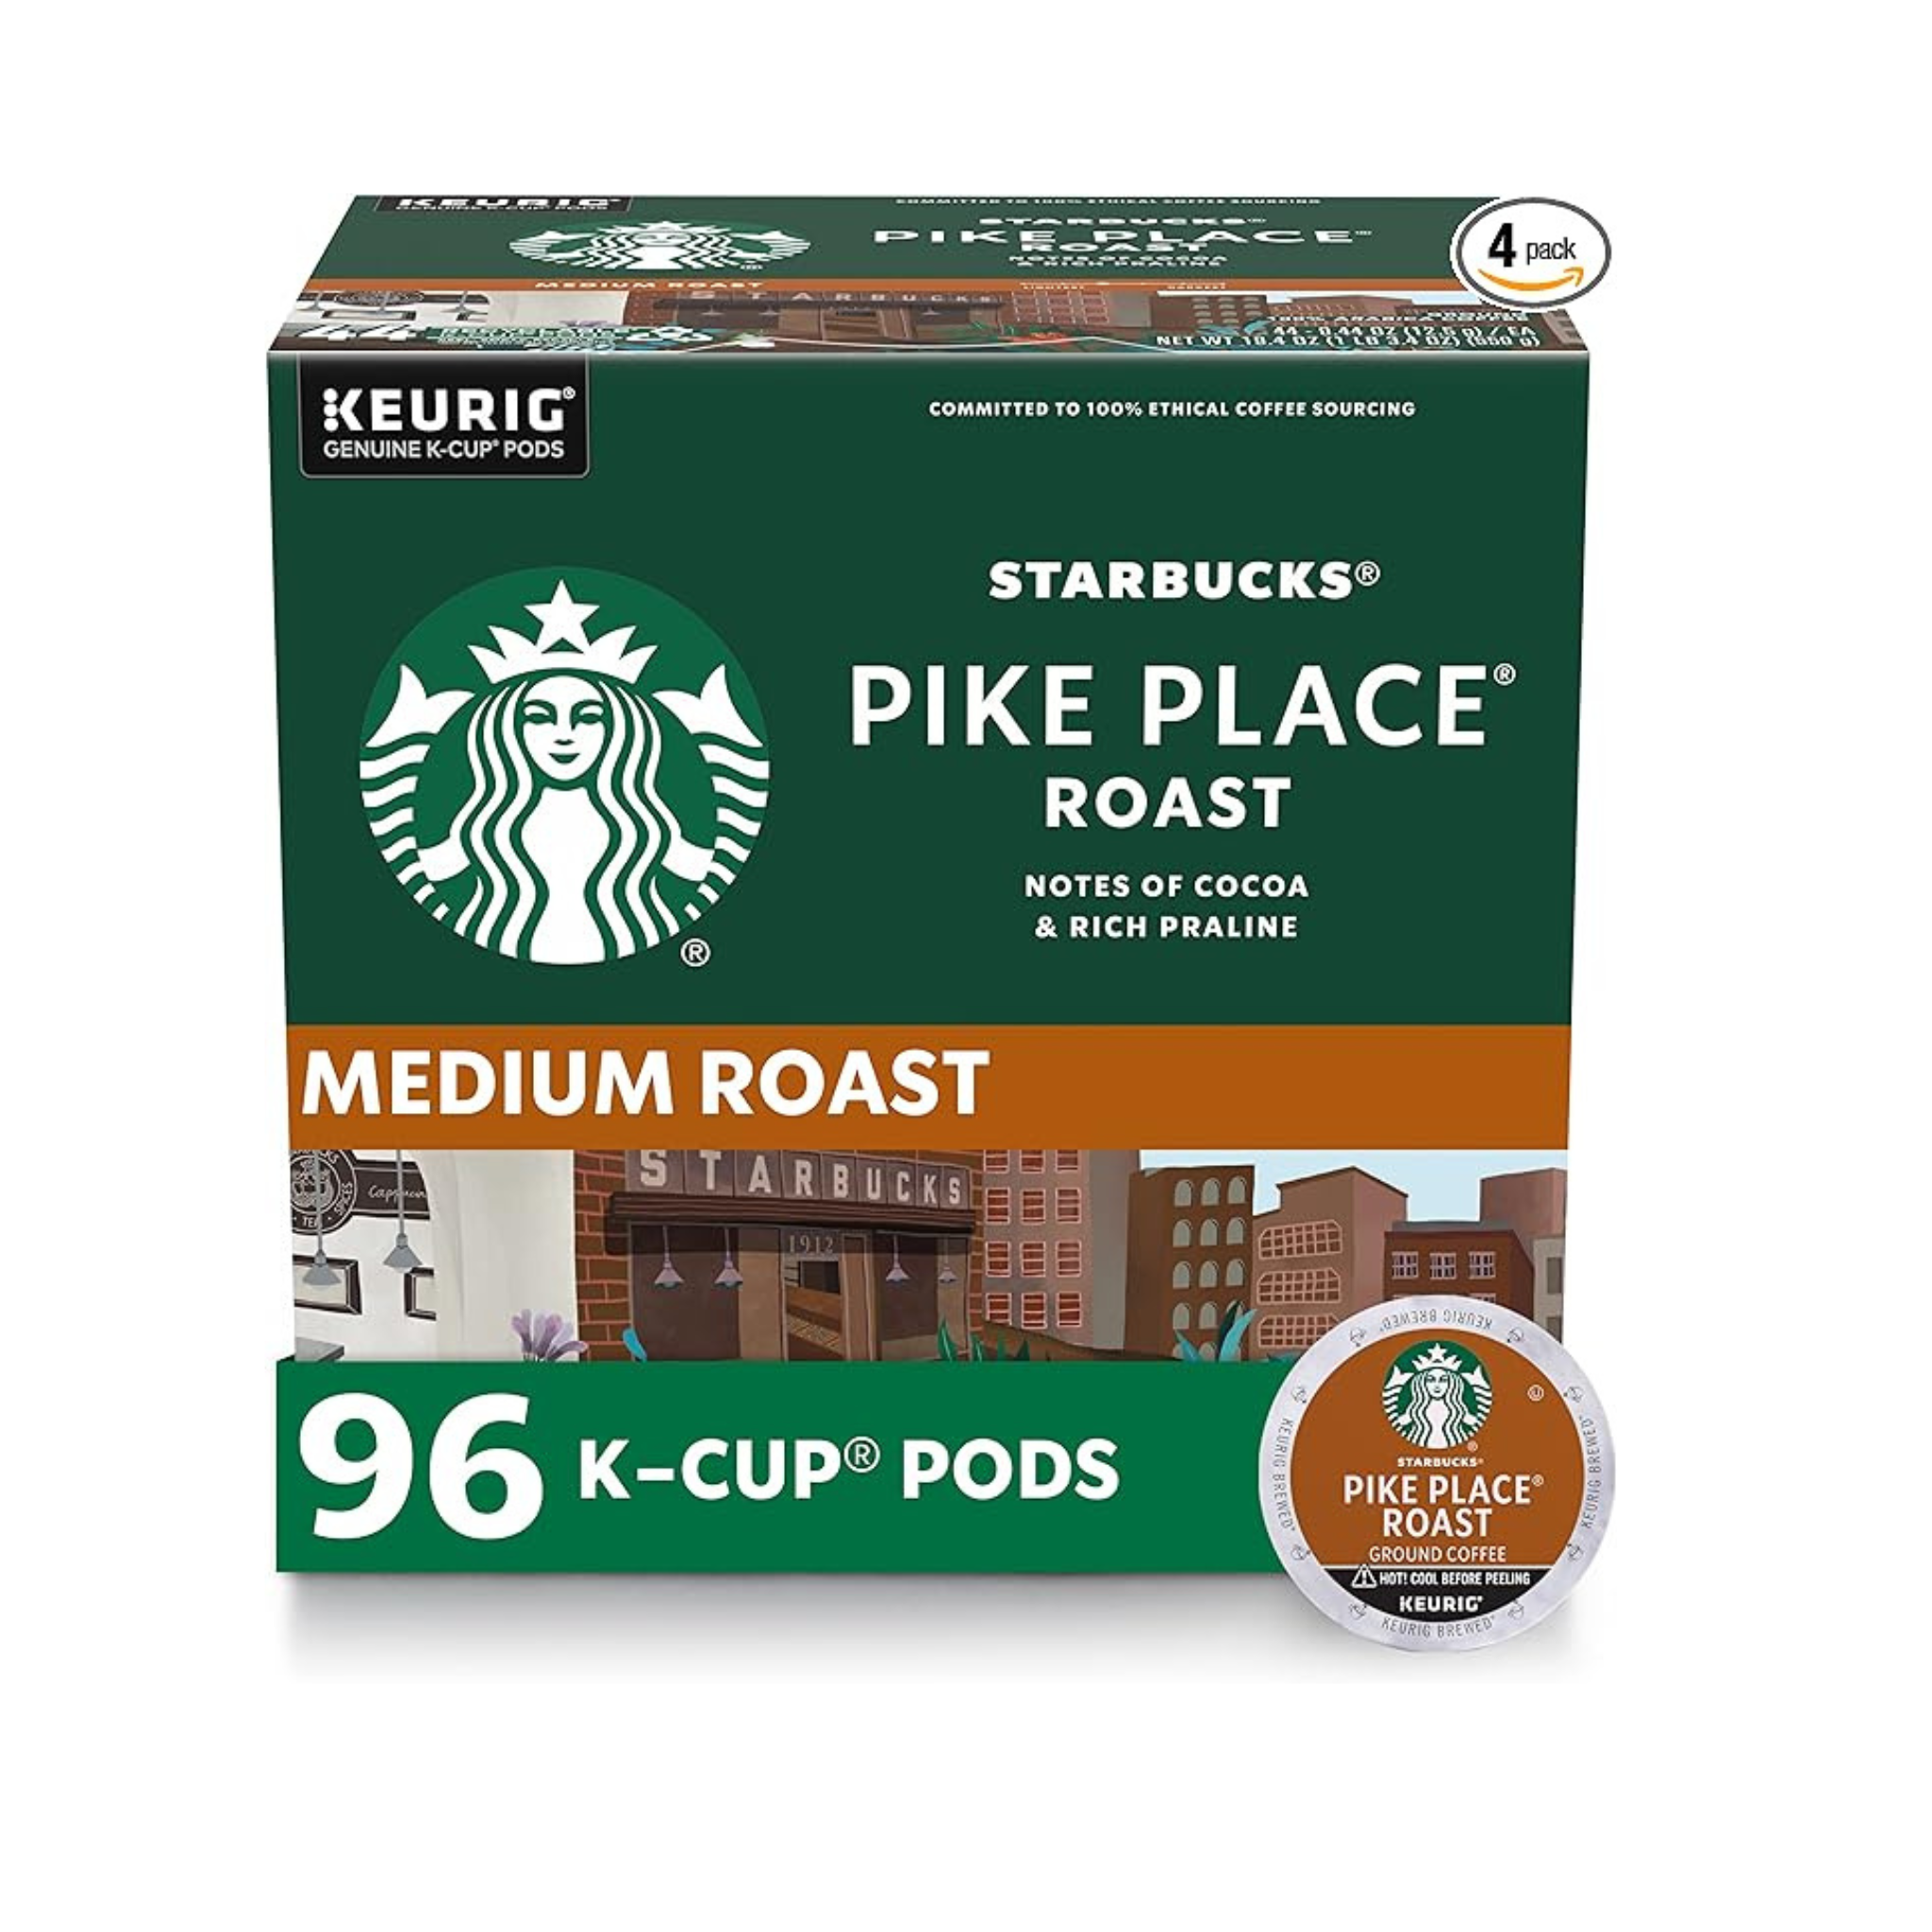 96 Starbucks Medium Roast K-Cups, Pike Place Roast